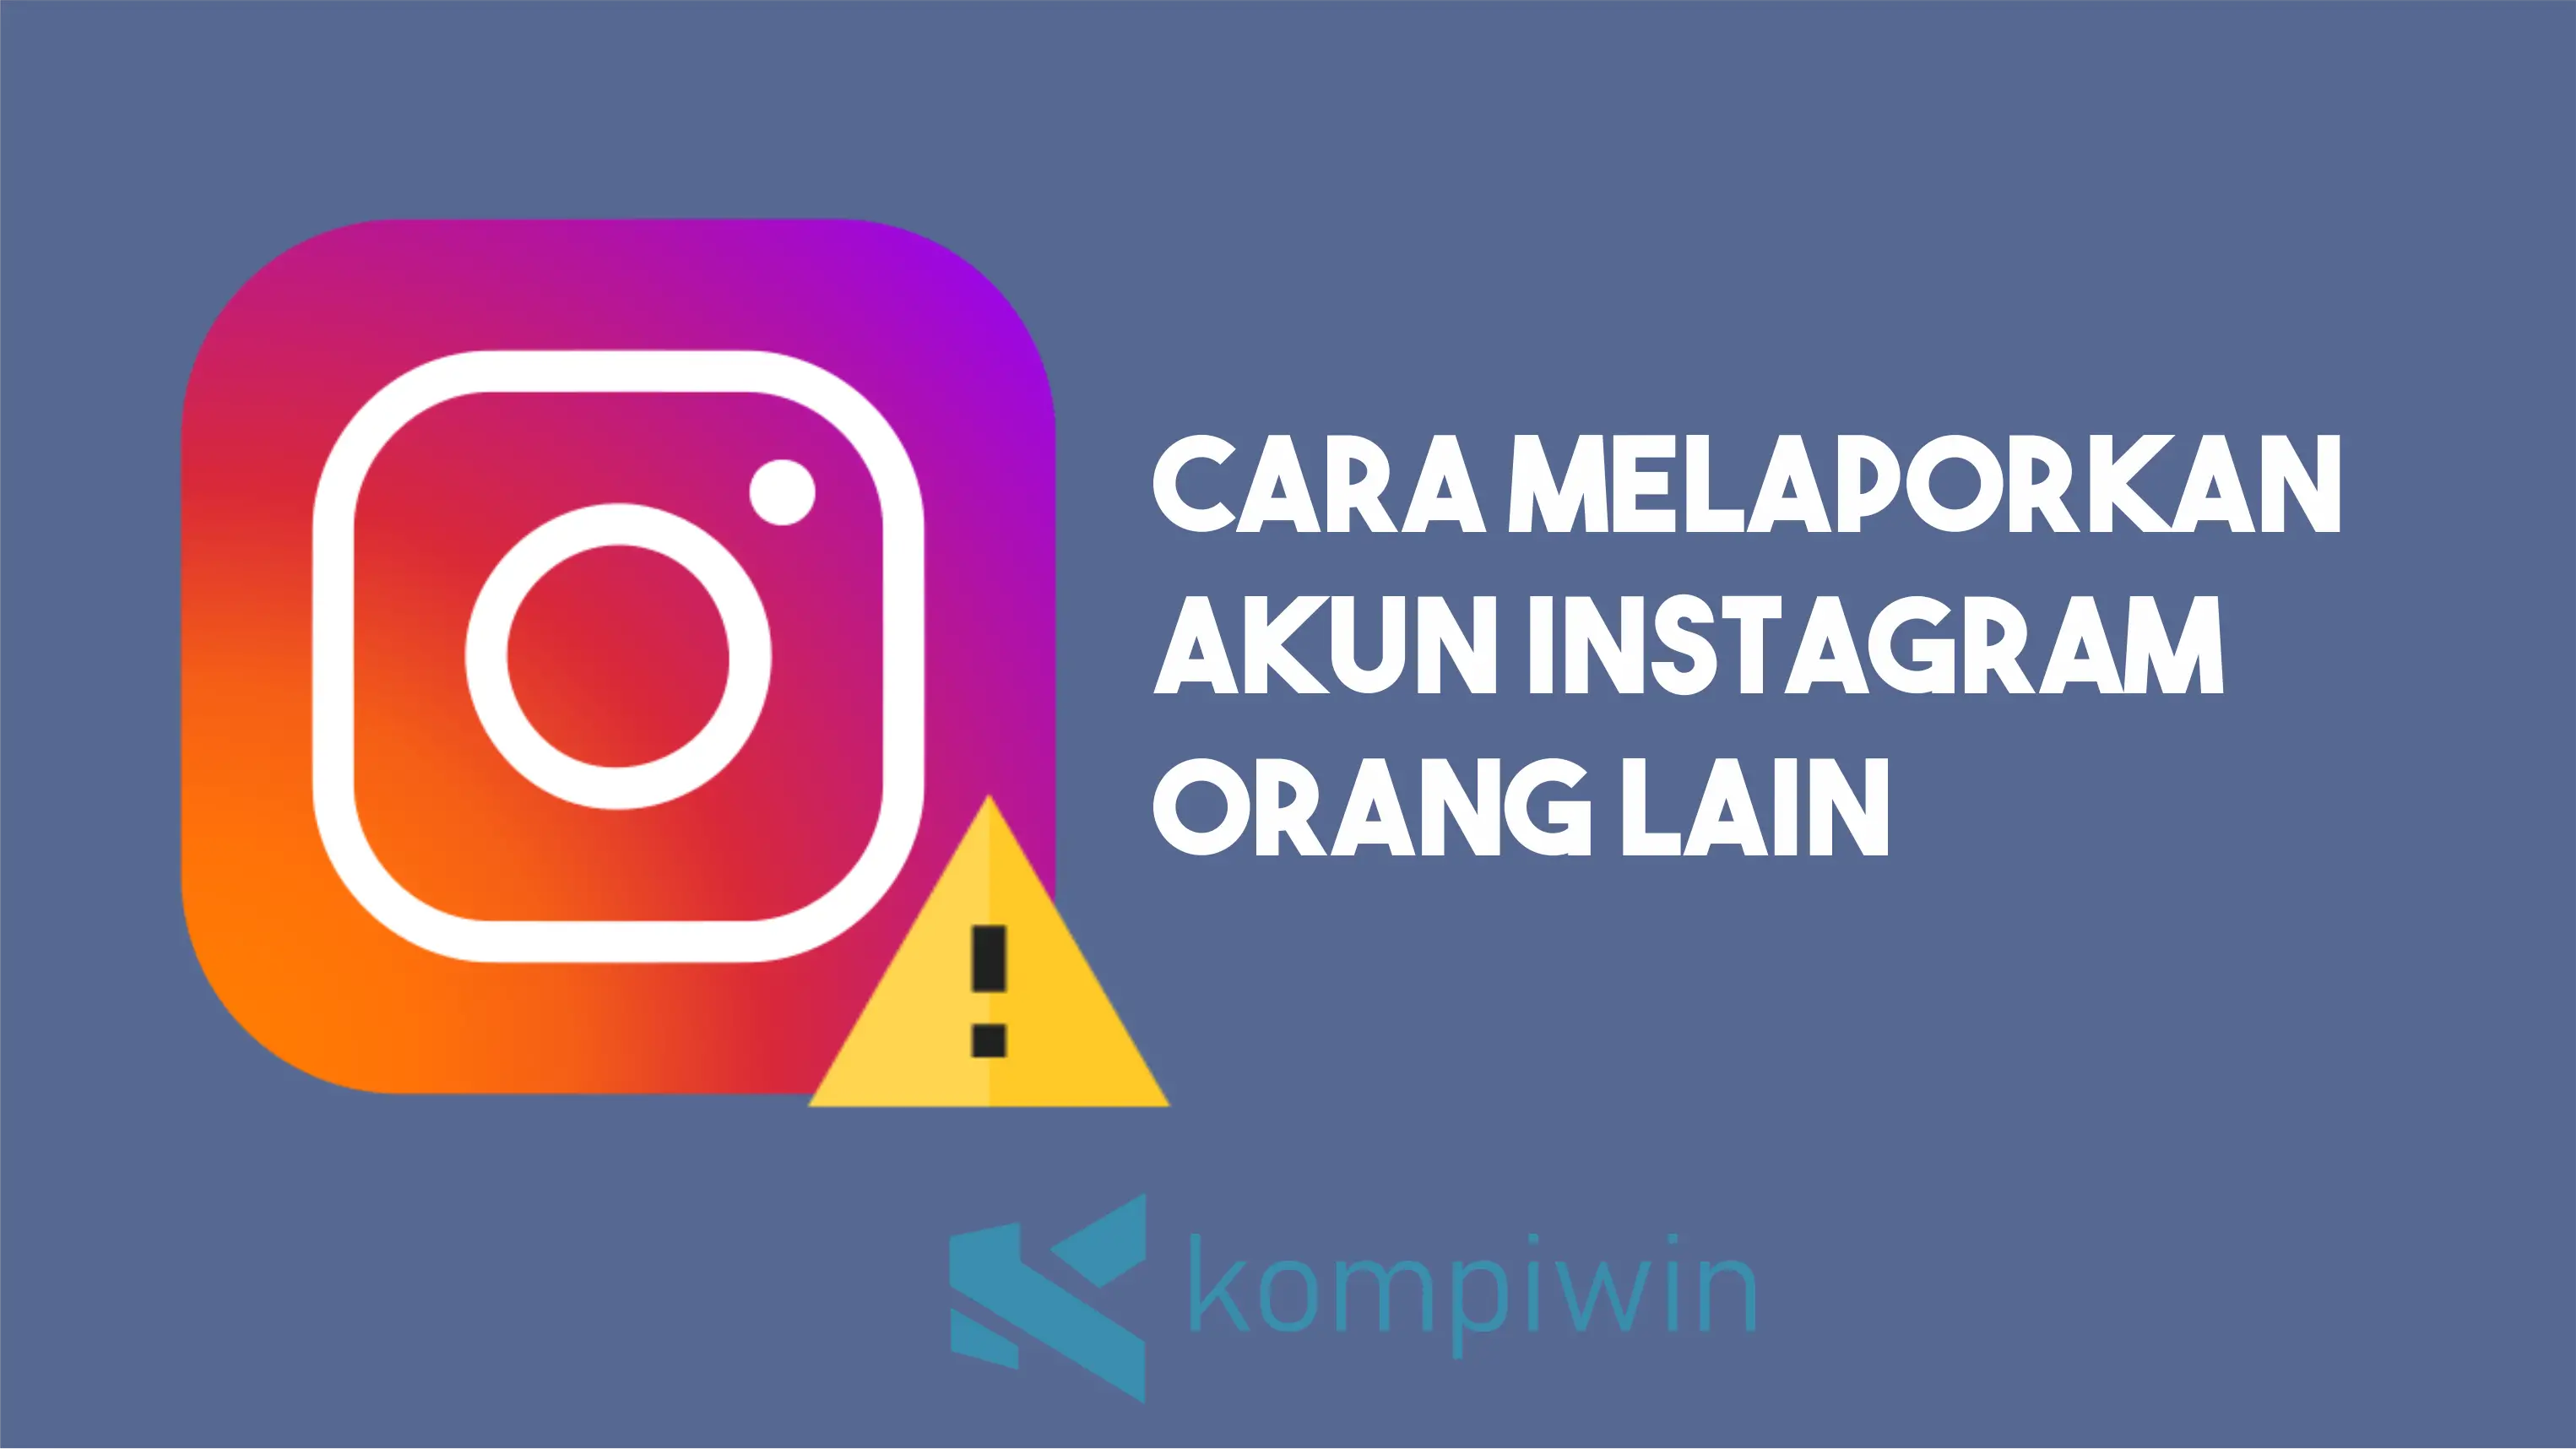 Cara Melaporkan Akun Instagram Orang Lain (Report) 1